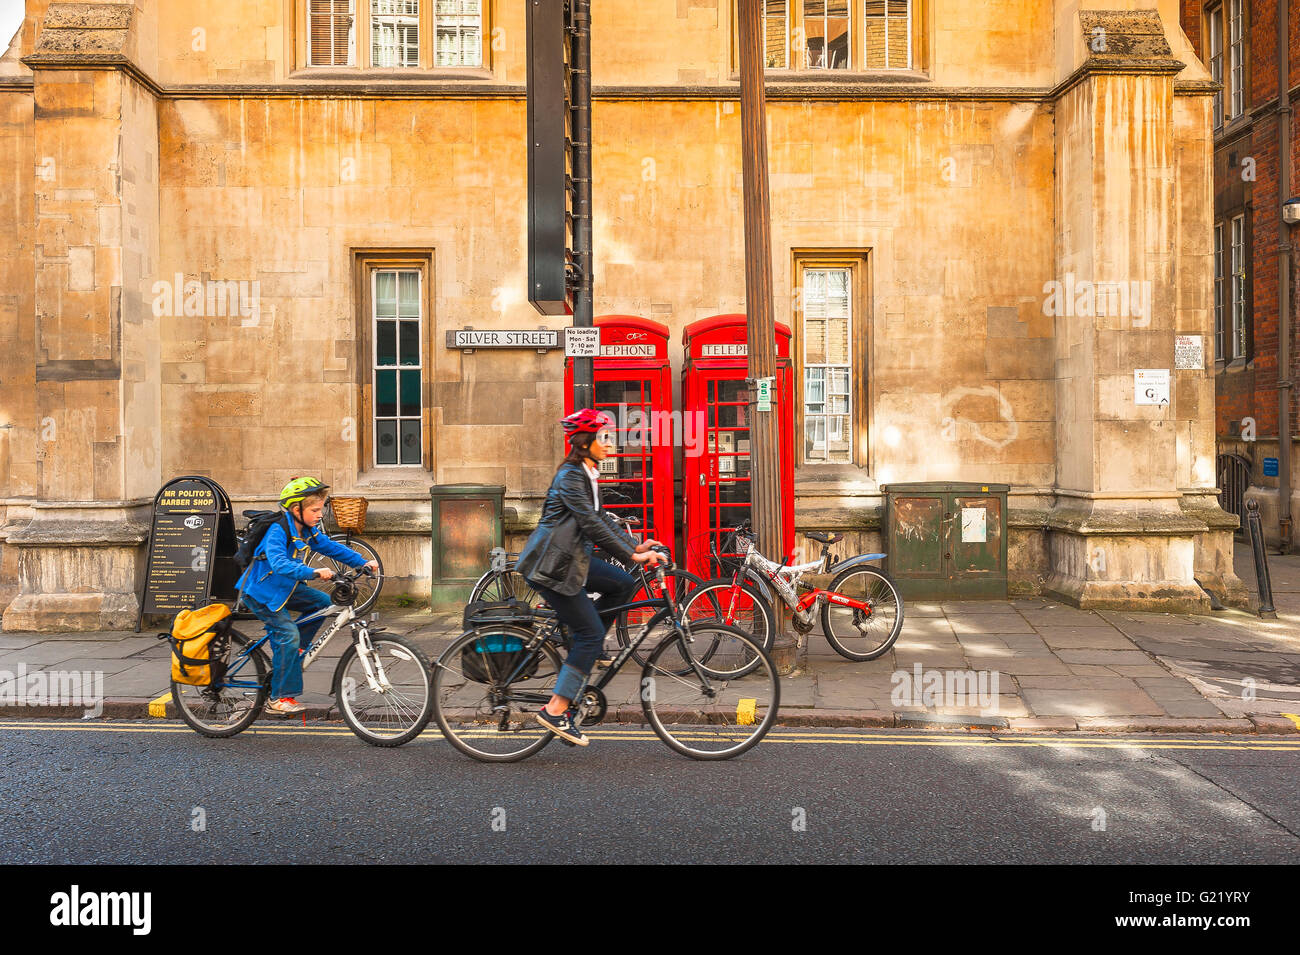 Mère enfant vélo de famille , vue d'une mère et d'un enfant à cheval leurs vélos le long de Silver Street dans la ville de Cambridge, Royaume-Uni, Angleterre. Banque D'Images